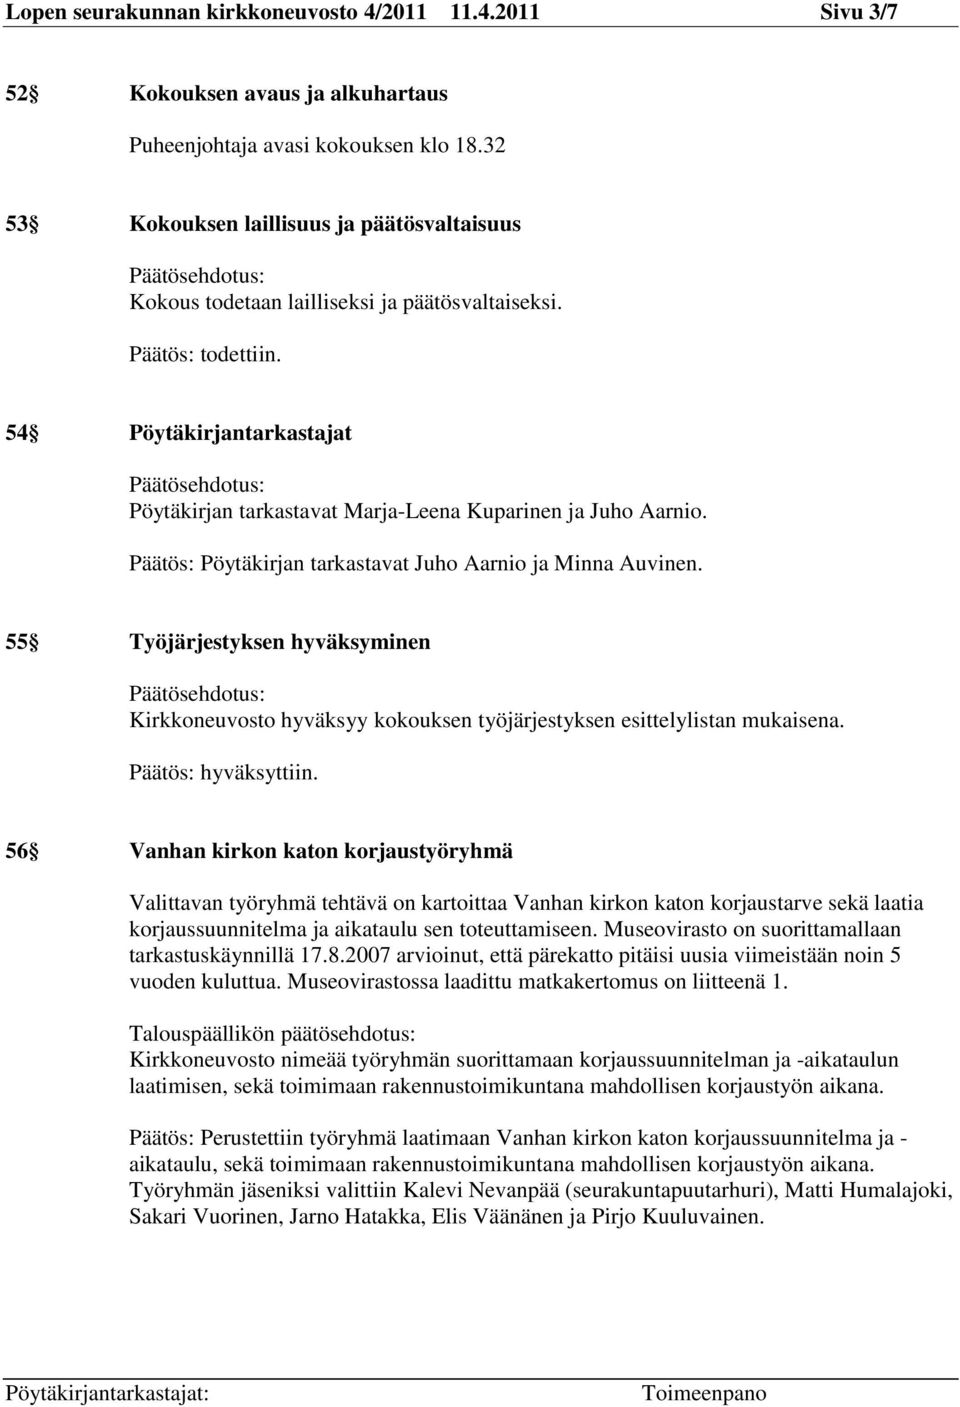 54 Pöytäkirjantarkastajat Päätösehdotus: Pöytäkirjan tarkastavat Marja-Leena Kuparinen ja Juho Aarnio. Päätös: Pöytäkirjan tarkastavat Juho Aarnio ja Minna Auvinen.